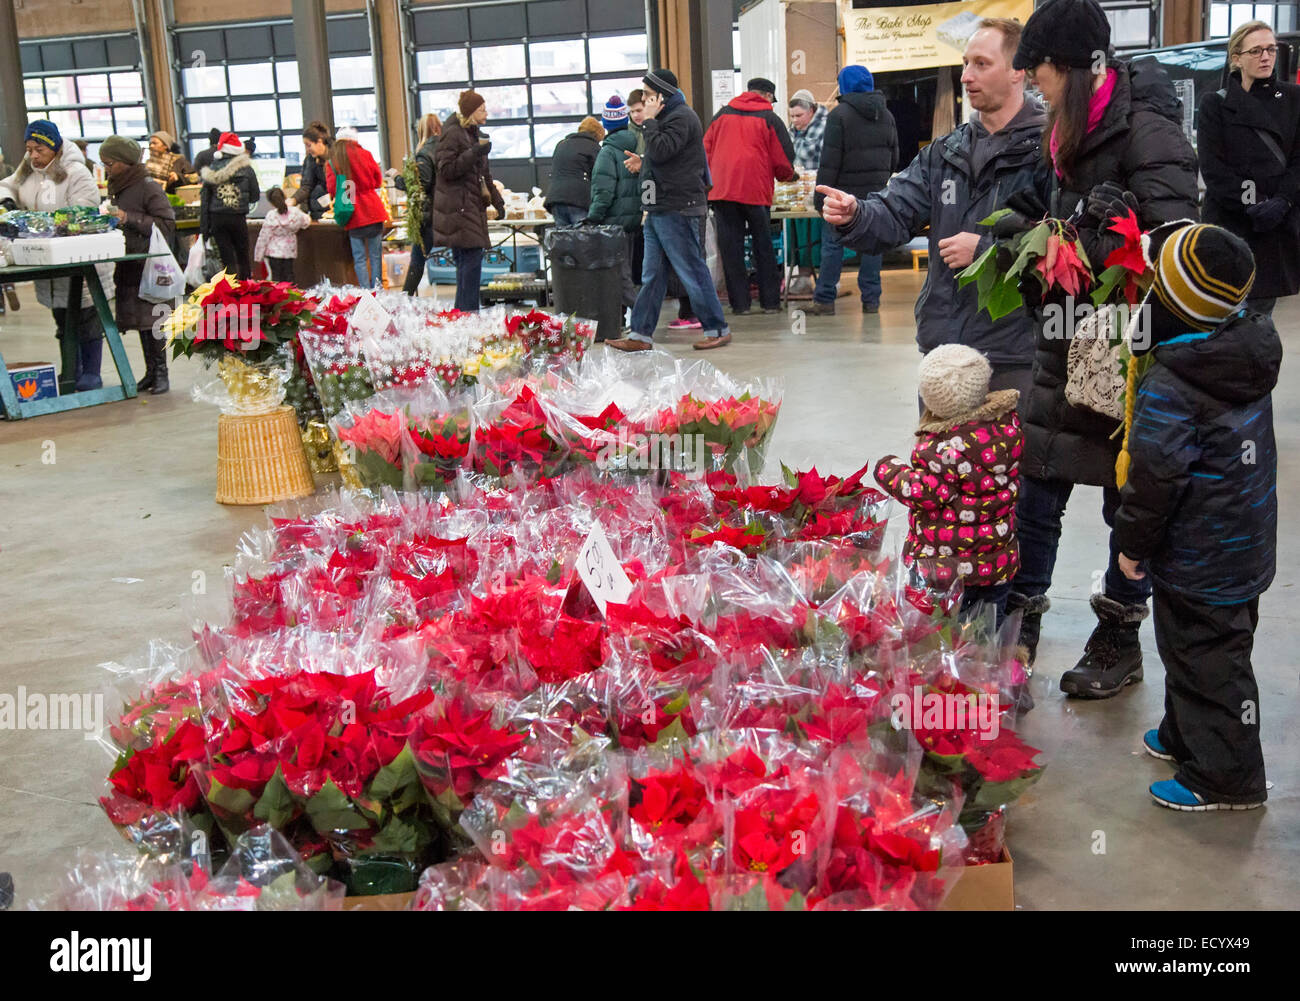 Detroit, Michigan - eine Familie kauft Weihnachtssterne für Weihnachten am osteuropäischen Markt. Die Farmers Market ist seit 1891 tätig. Stockfoto